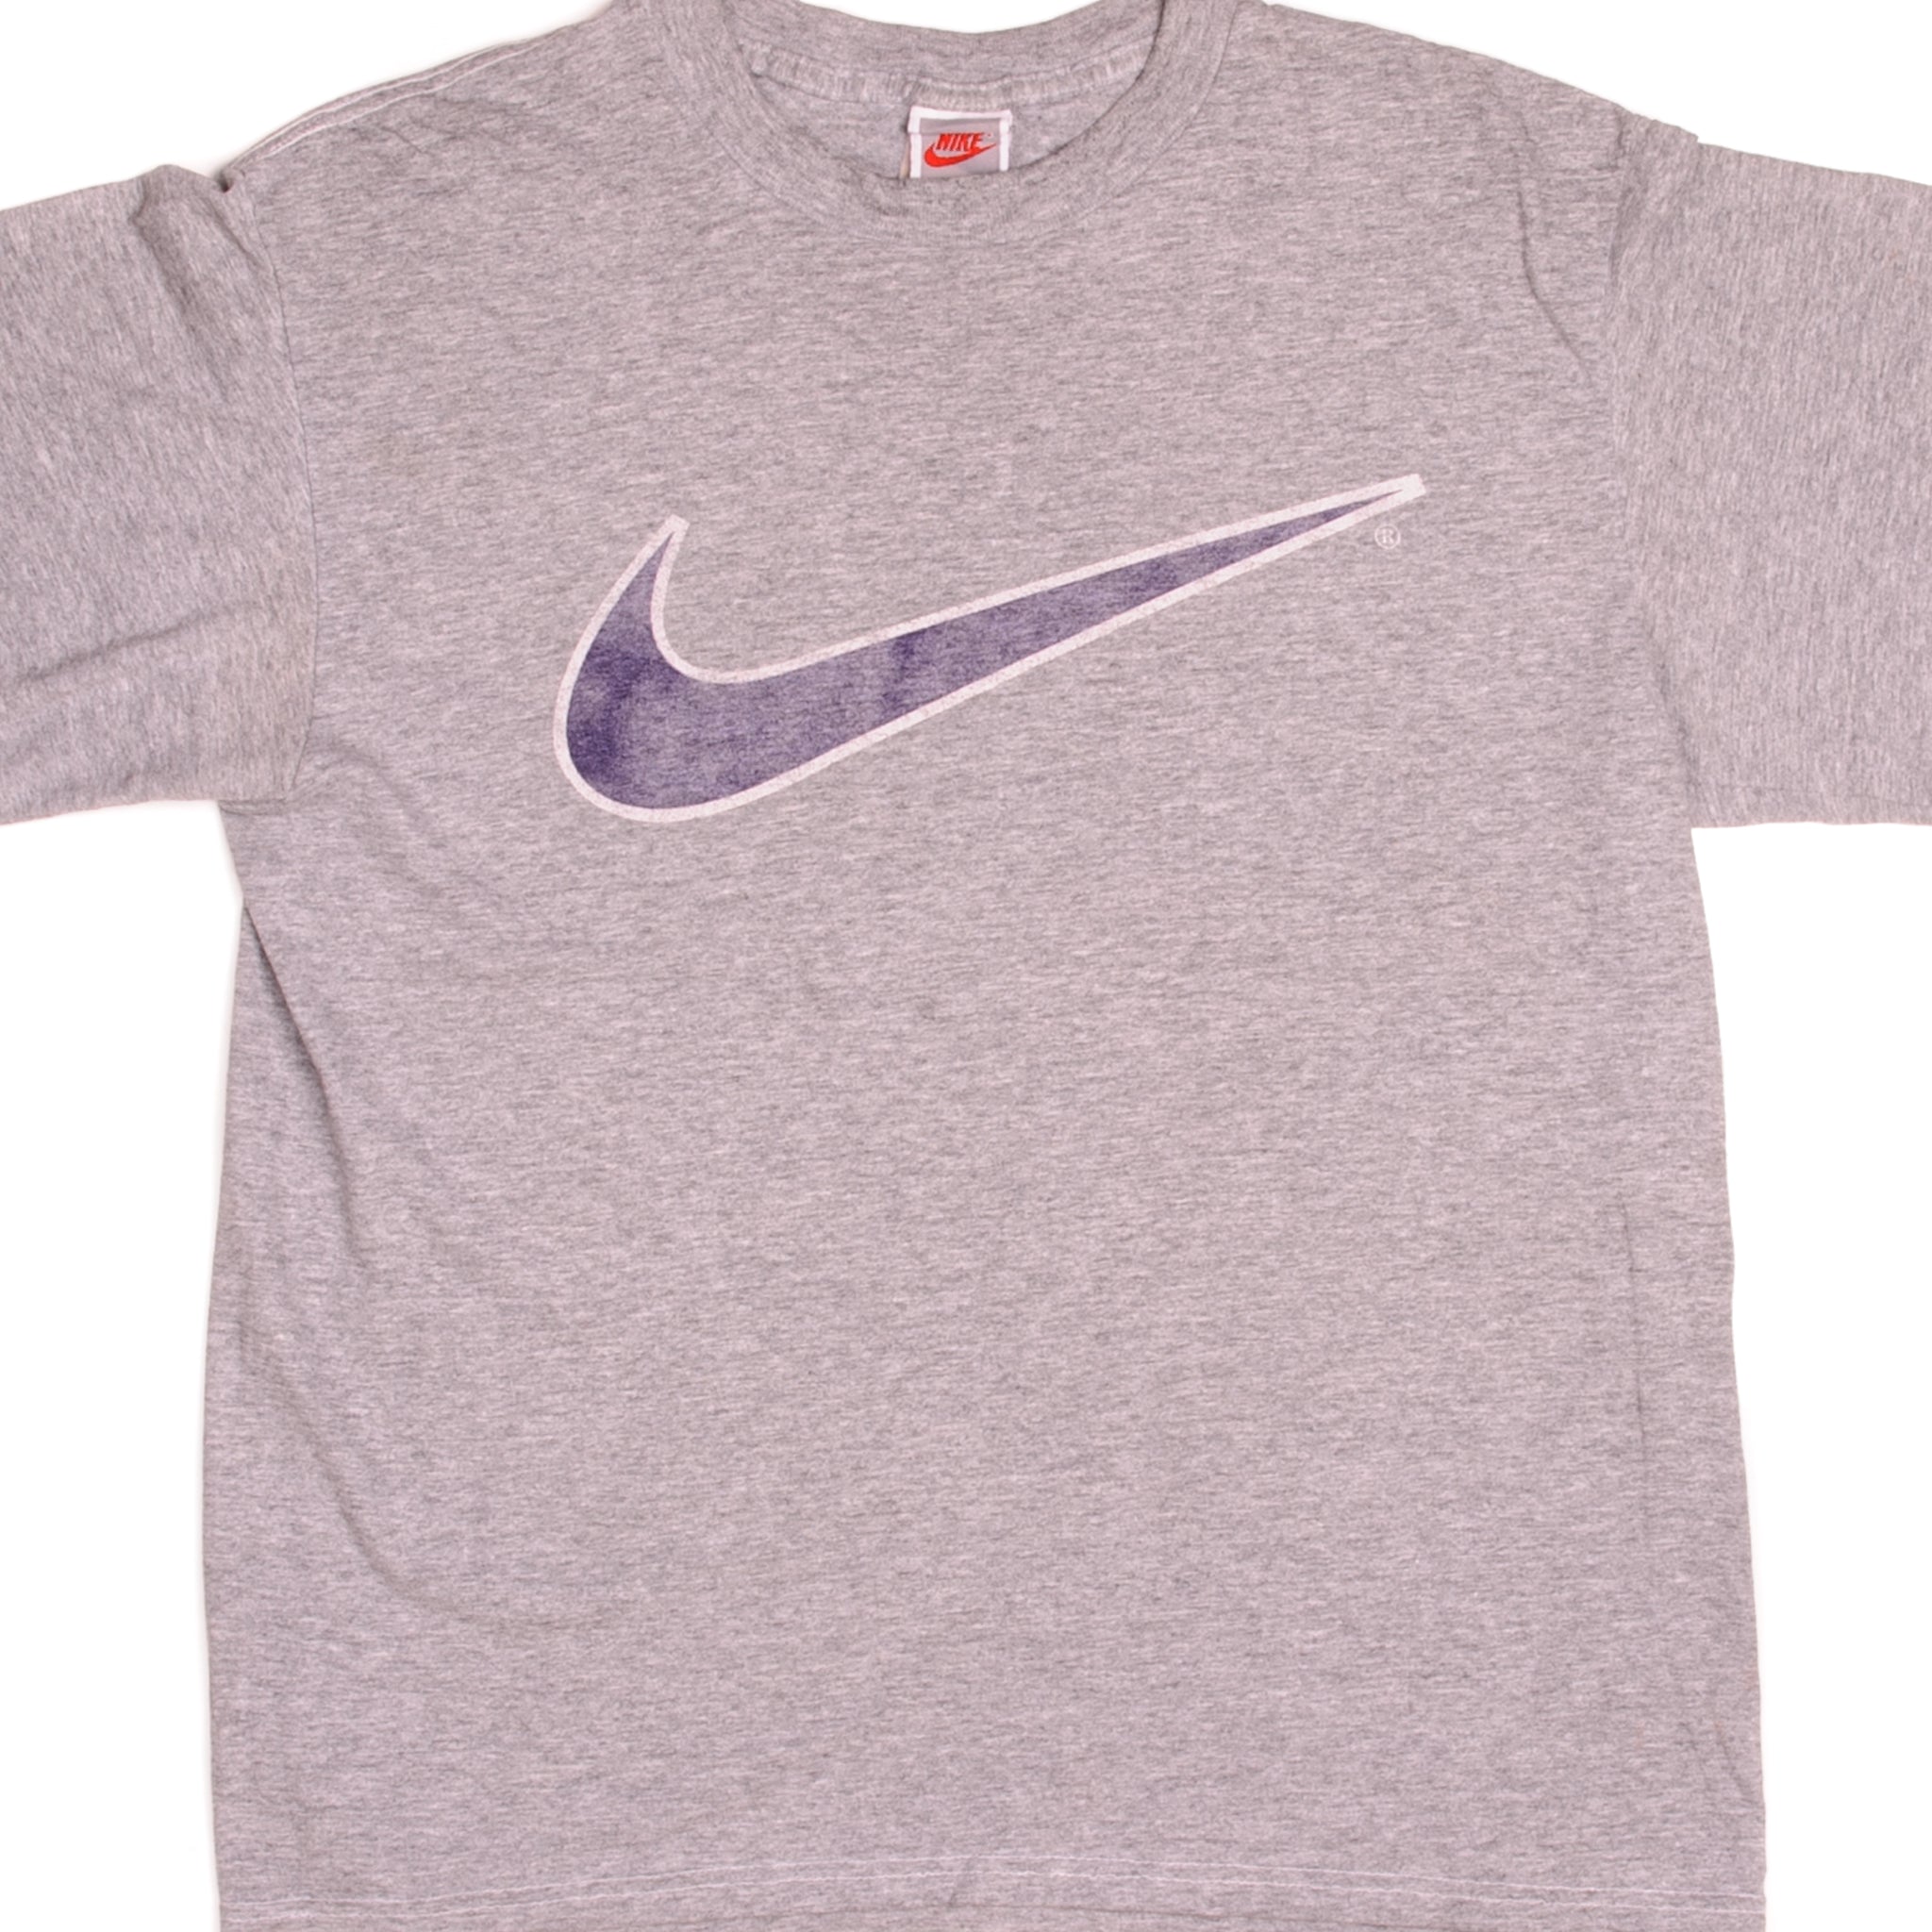 Vintage 90s Nike Mini Swoosh White Tag USA T-Shirt Black Essential Large L